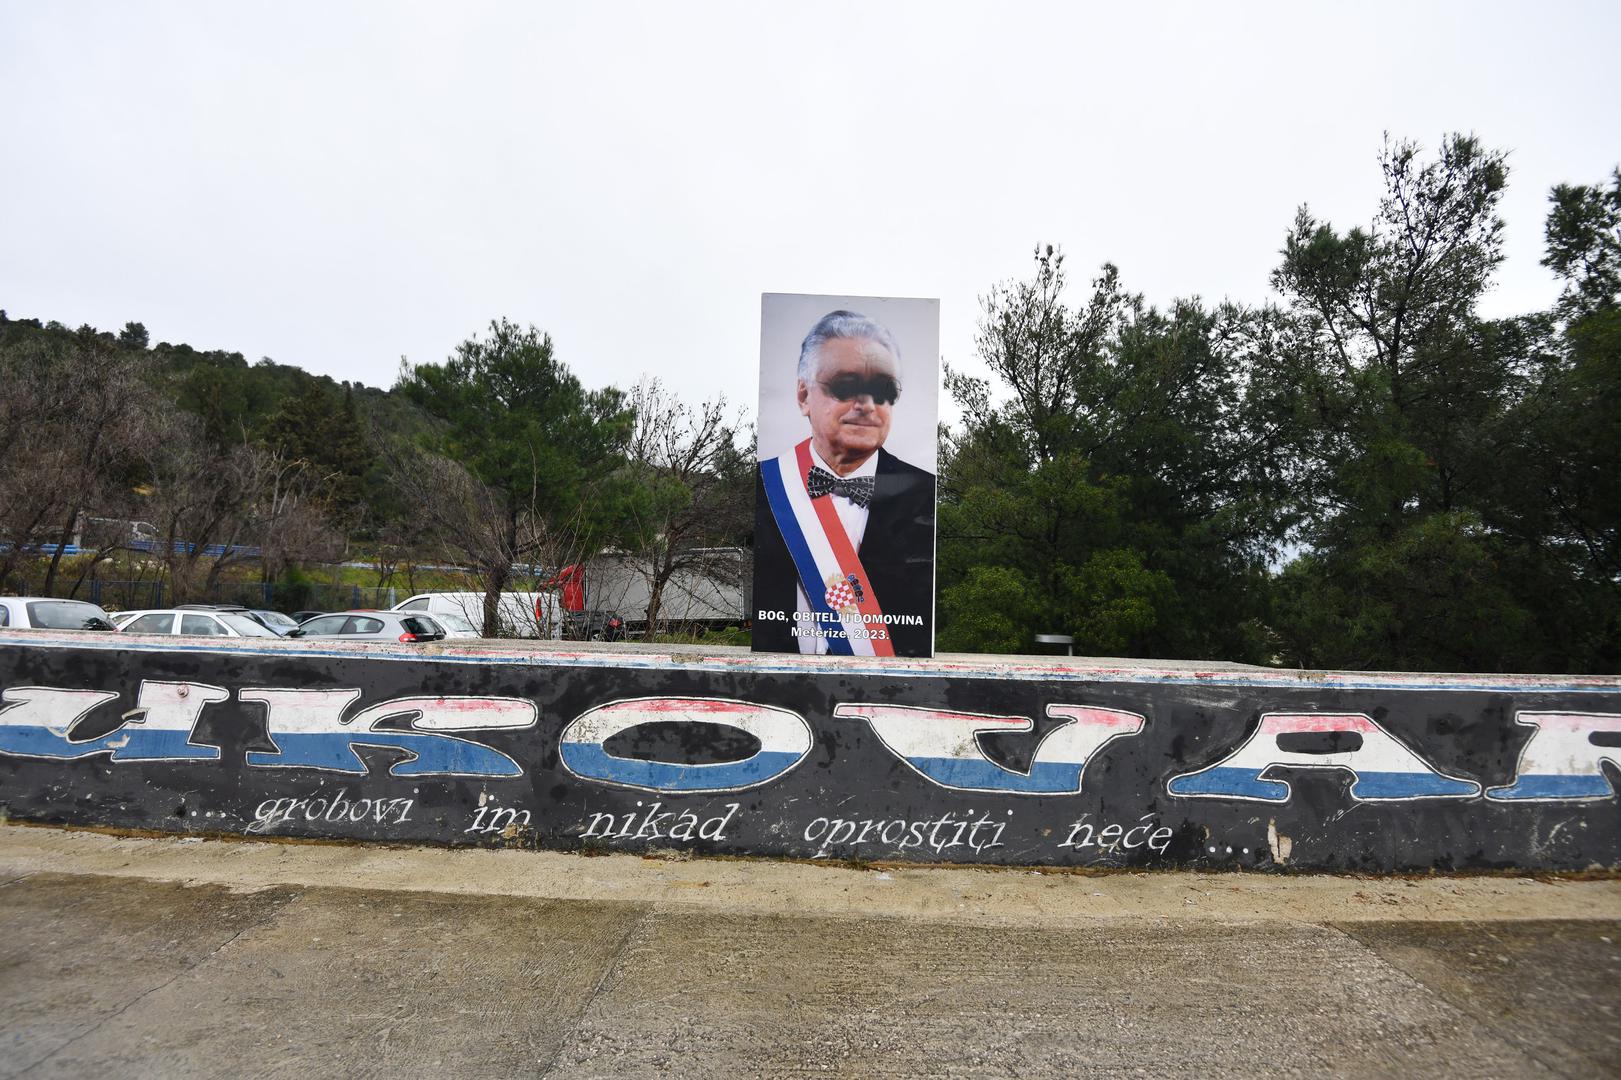 Išarana fotografija prvog hrvatskog predsjednika Franje Tuđmana dočekala je građane Šibenika ove srijede. 

